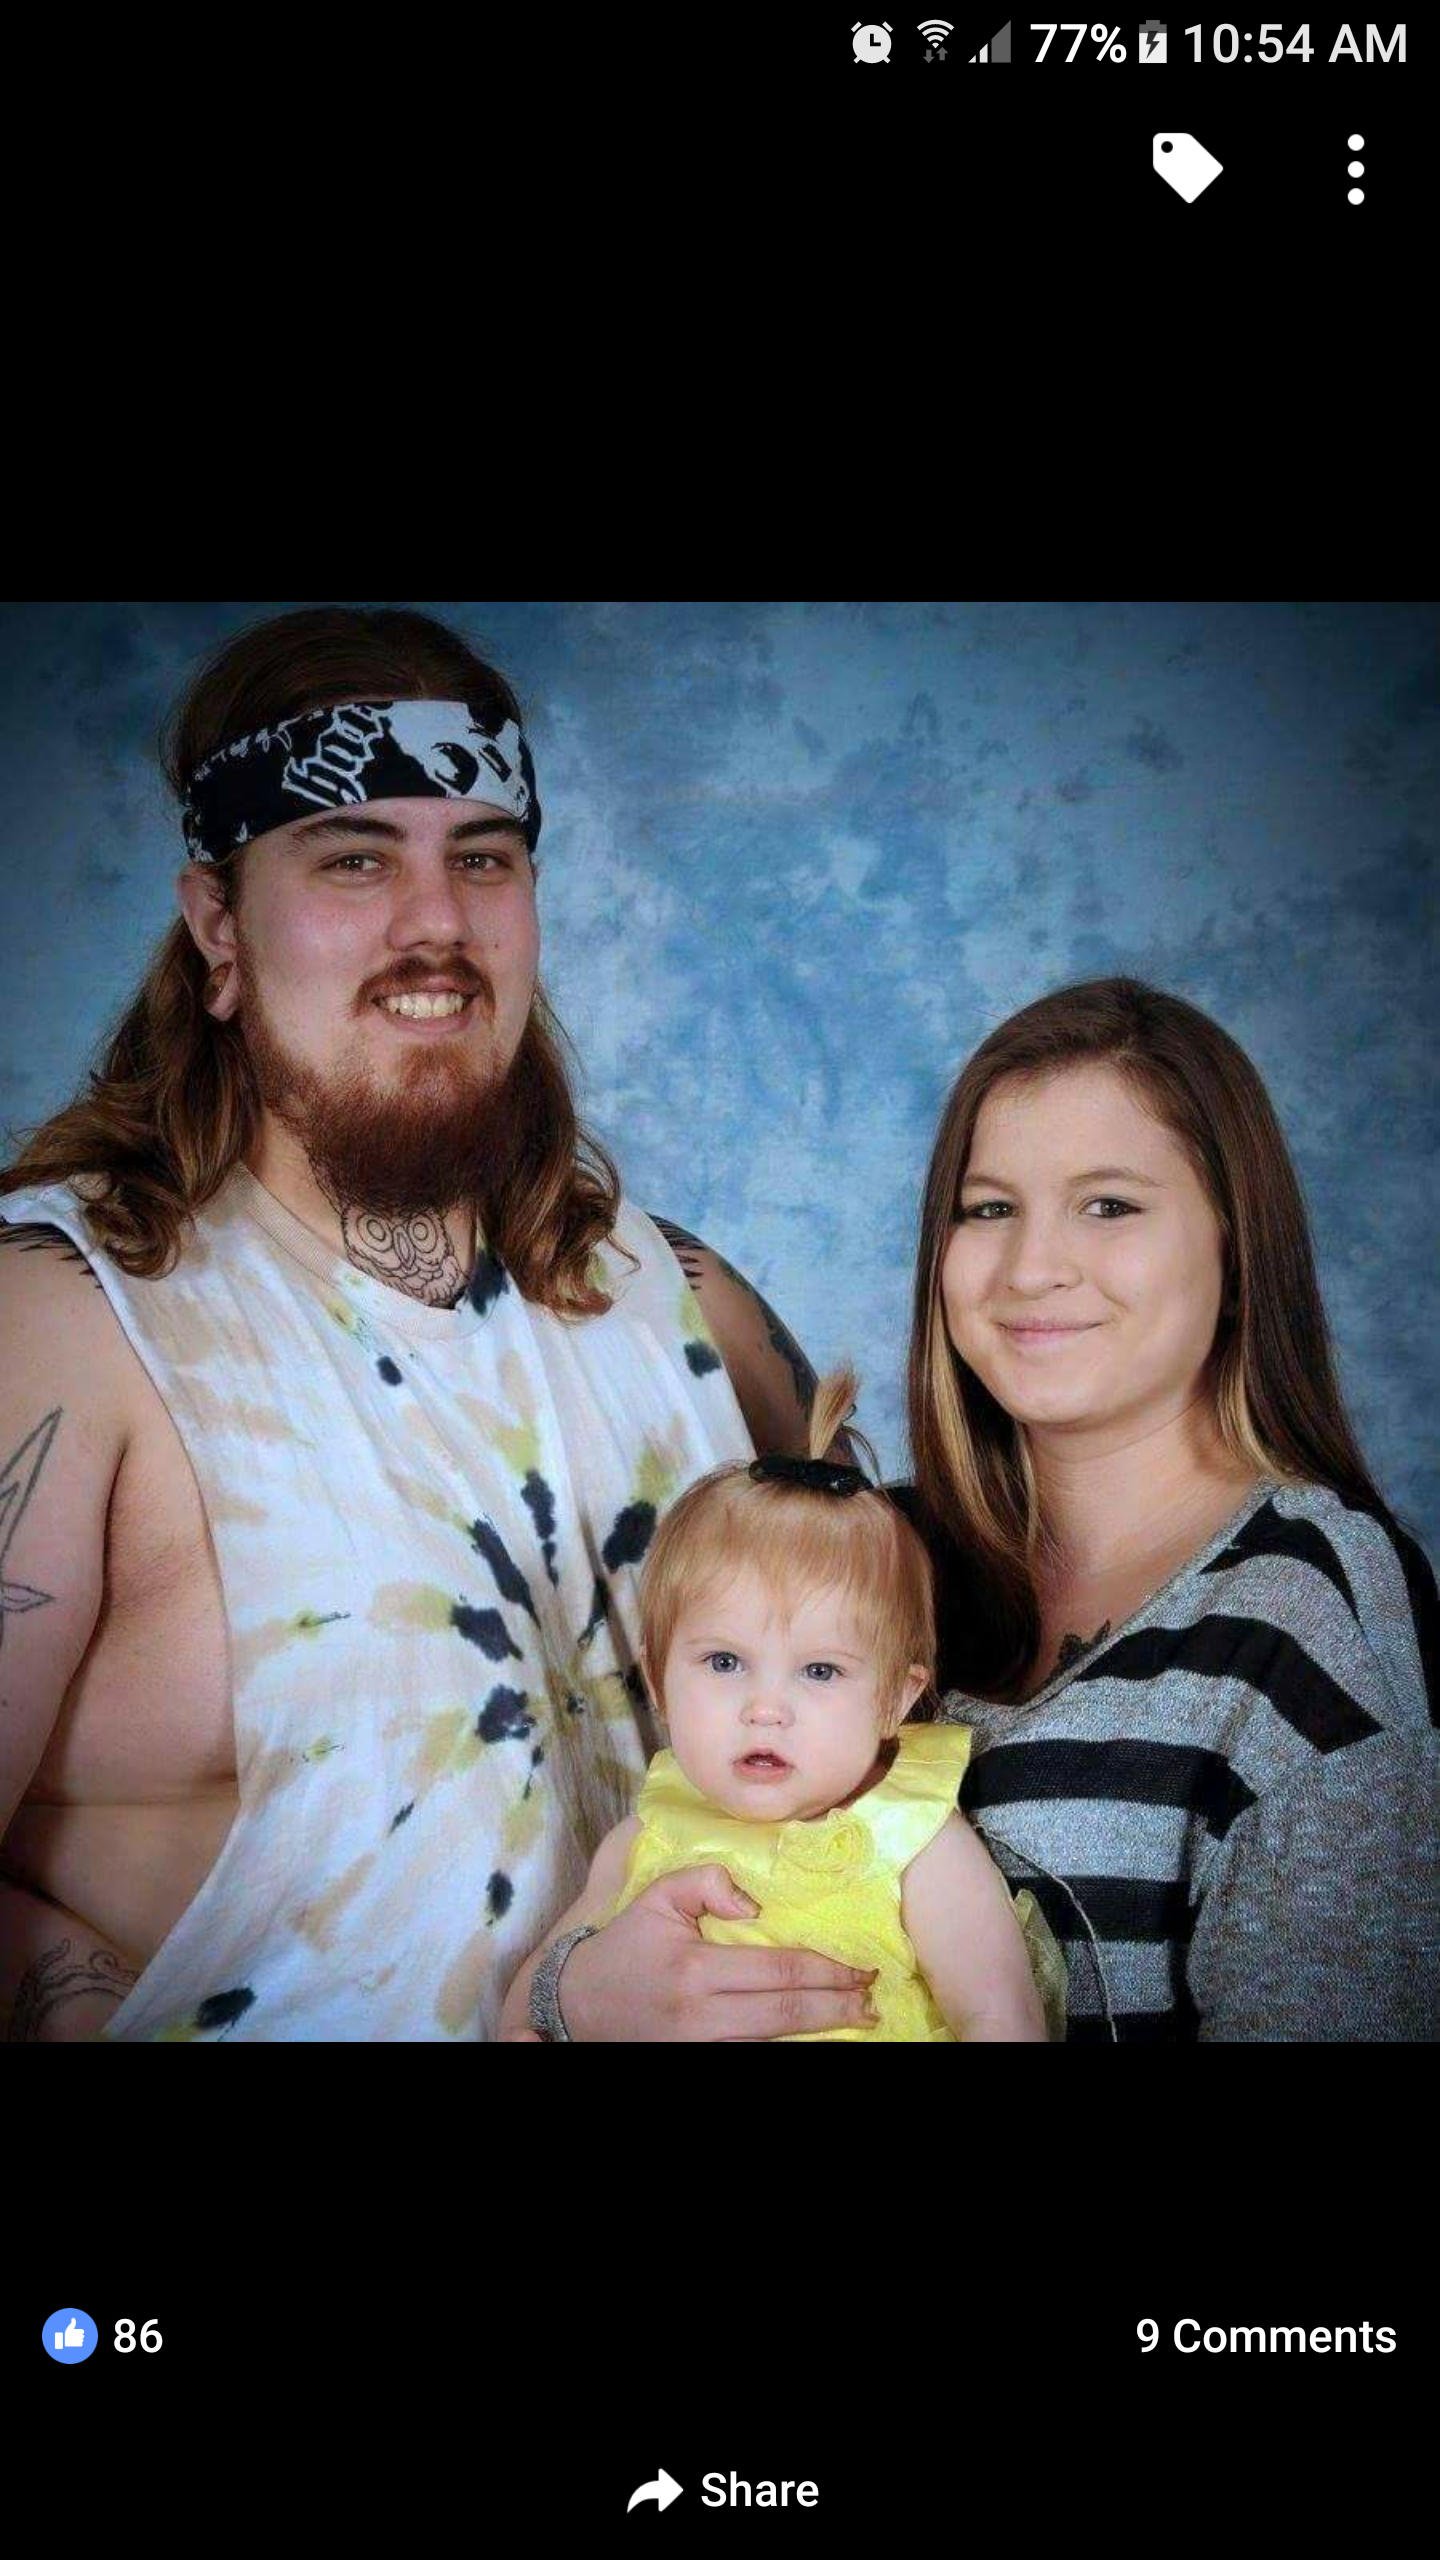 21 WTF family photos